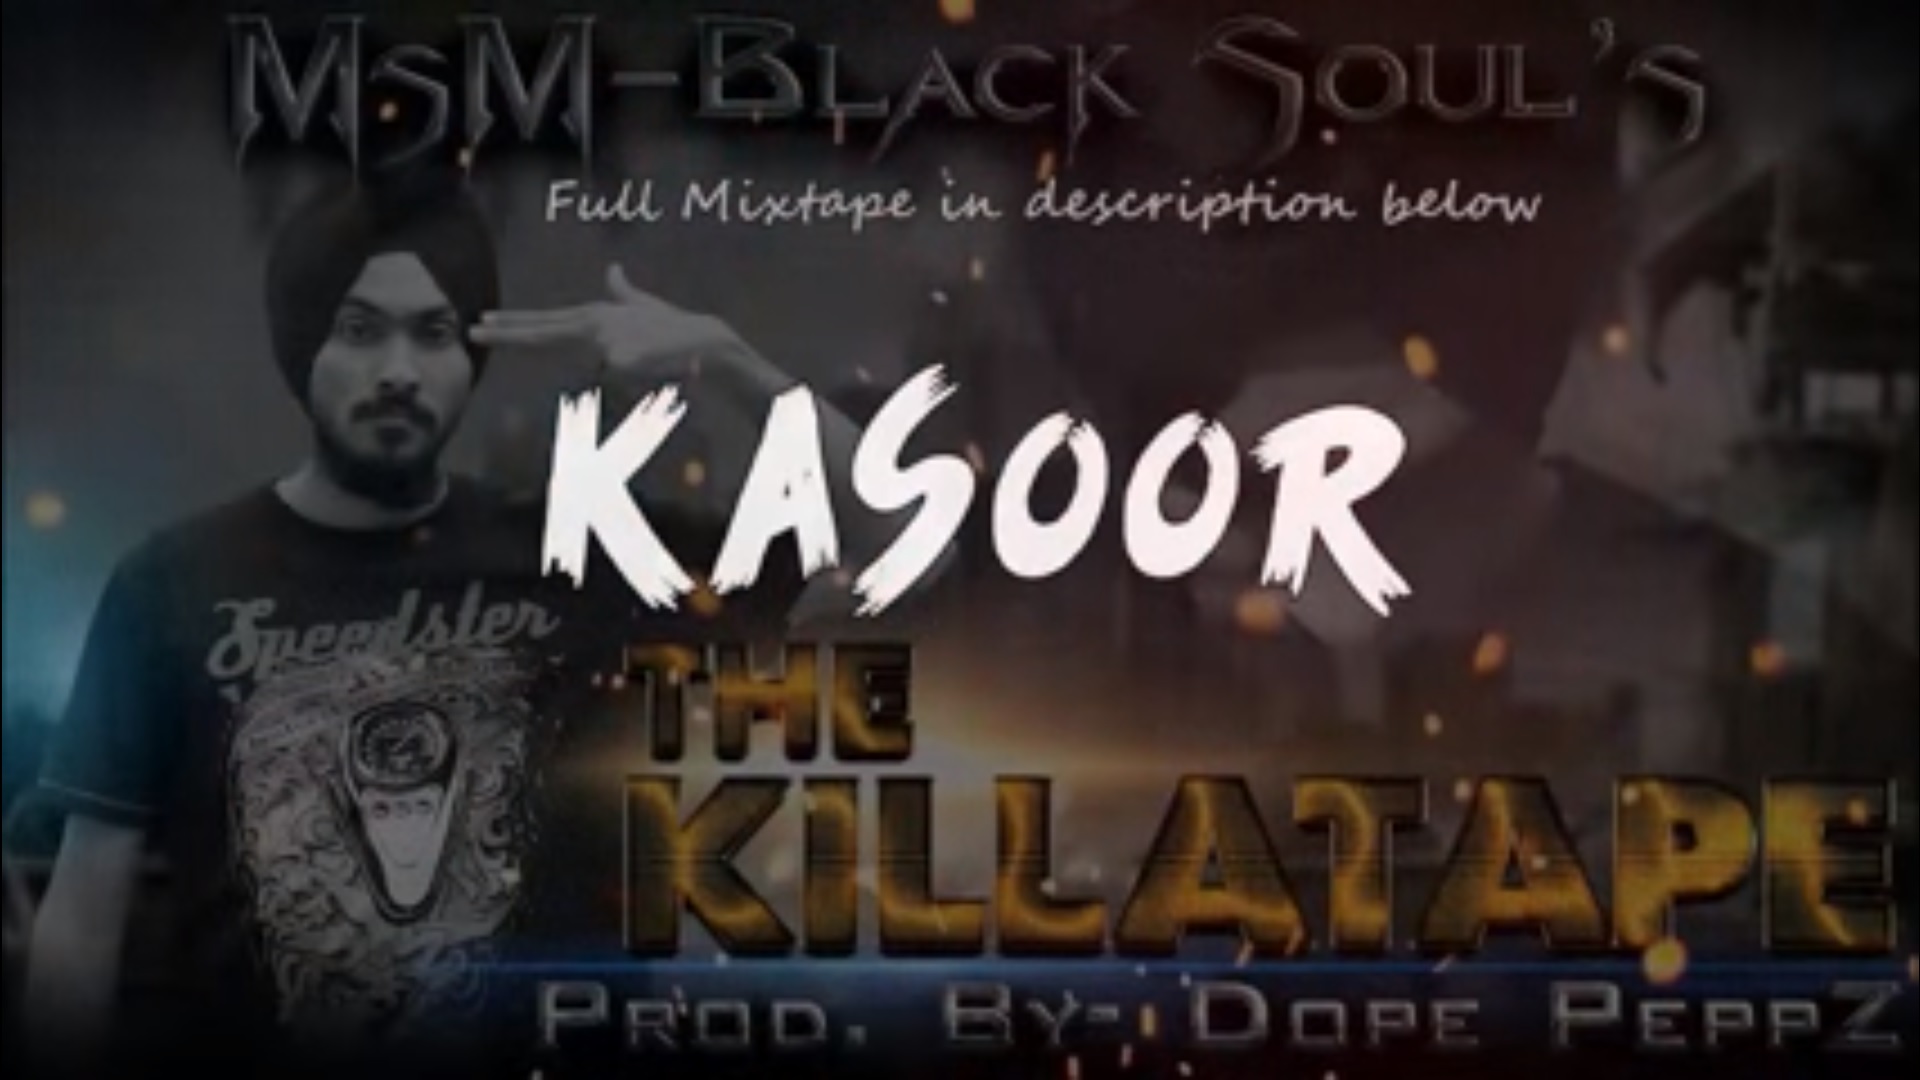 kasoor the killa tape msm blacksoul